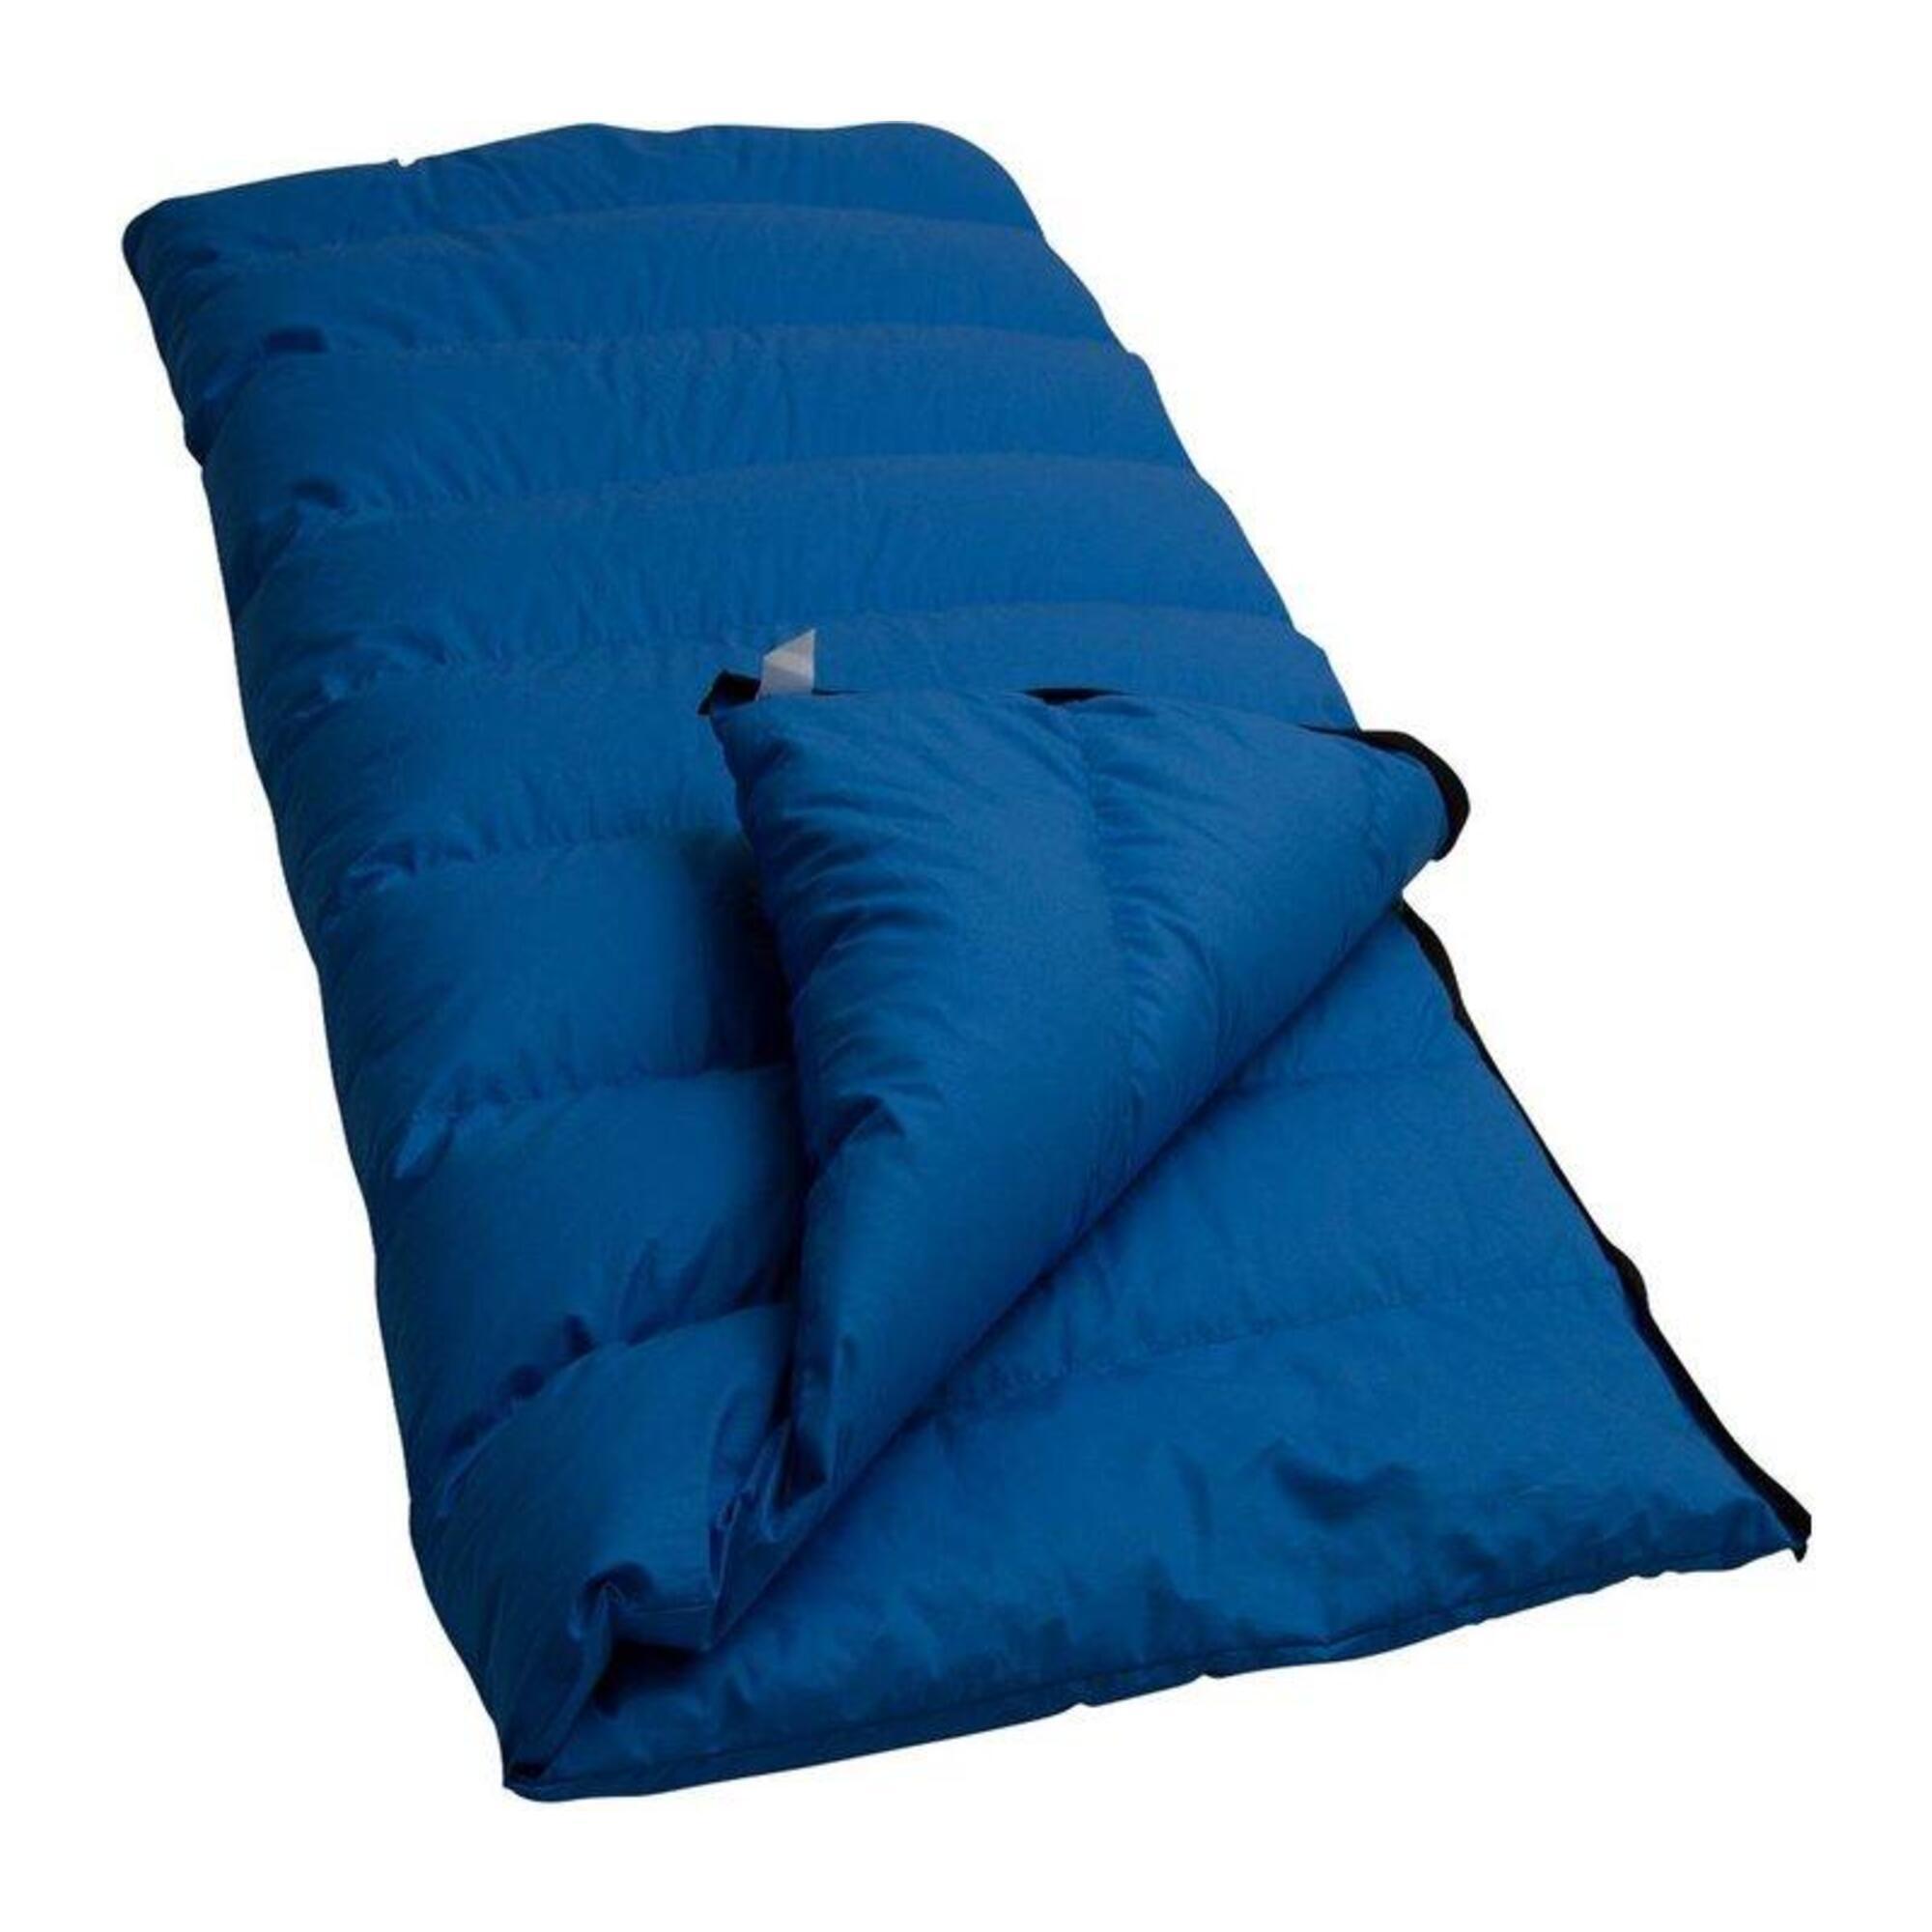 Спальный мешок Lowland Companion CC 1 с пуховым одеялом, синий